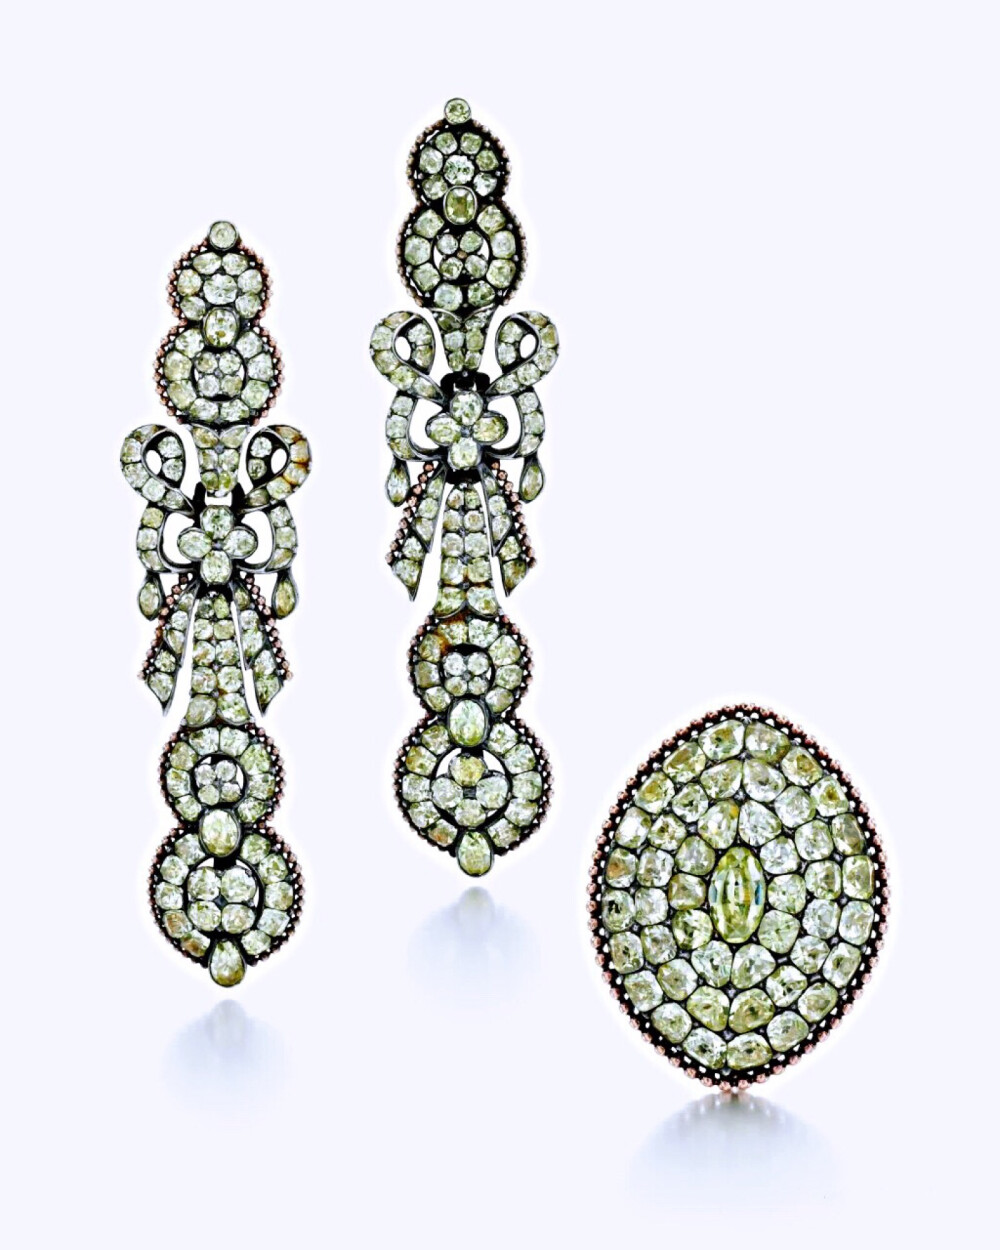 金绿宝石耳环及戒指套装
18世纪下半叶